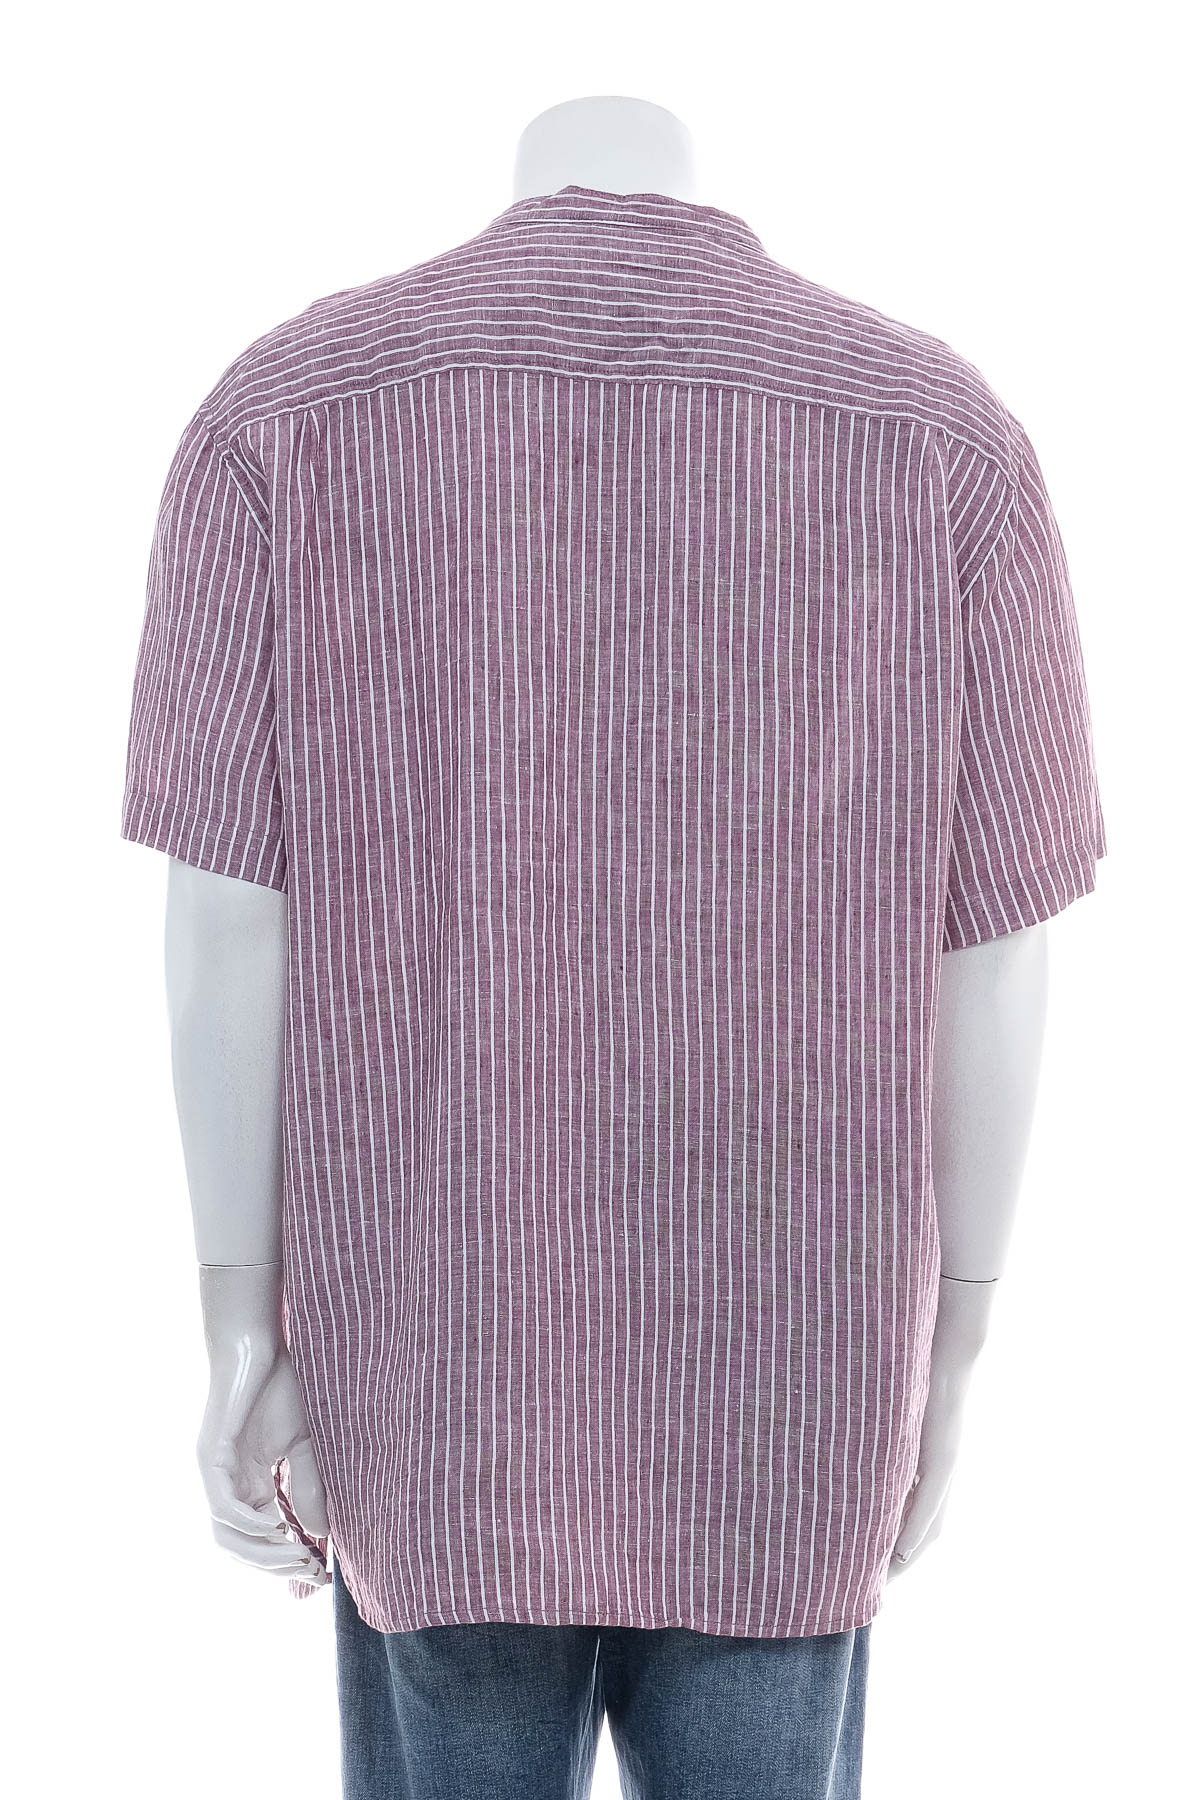 Мъжка риза - Bpc selection bonprix collection - 1